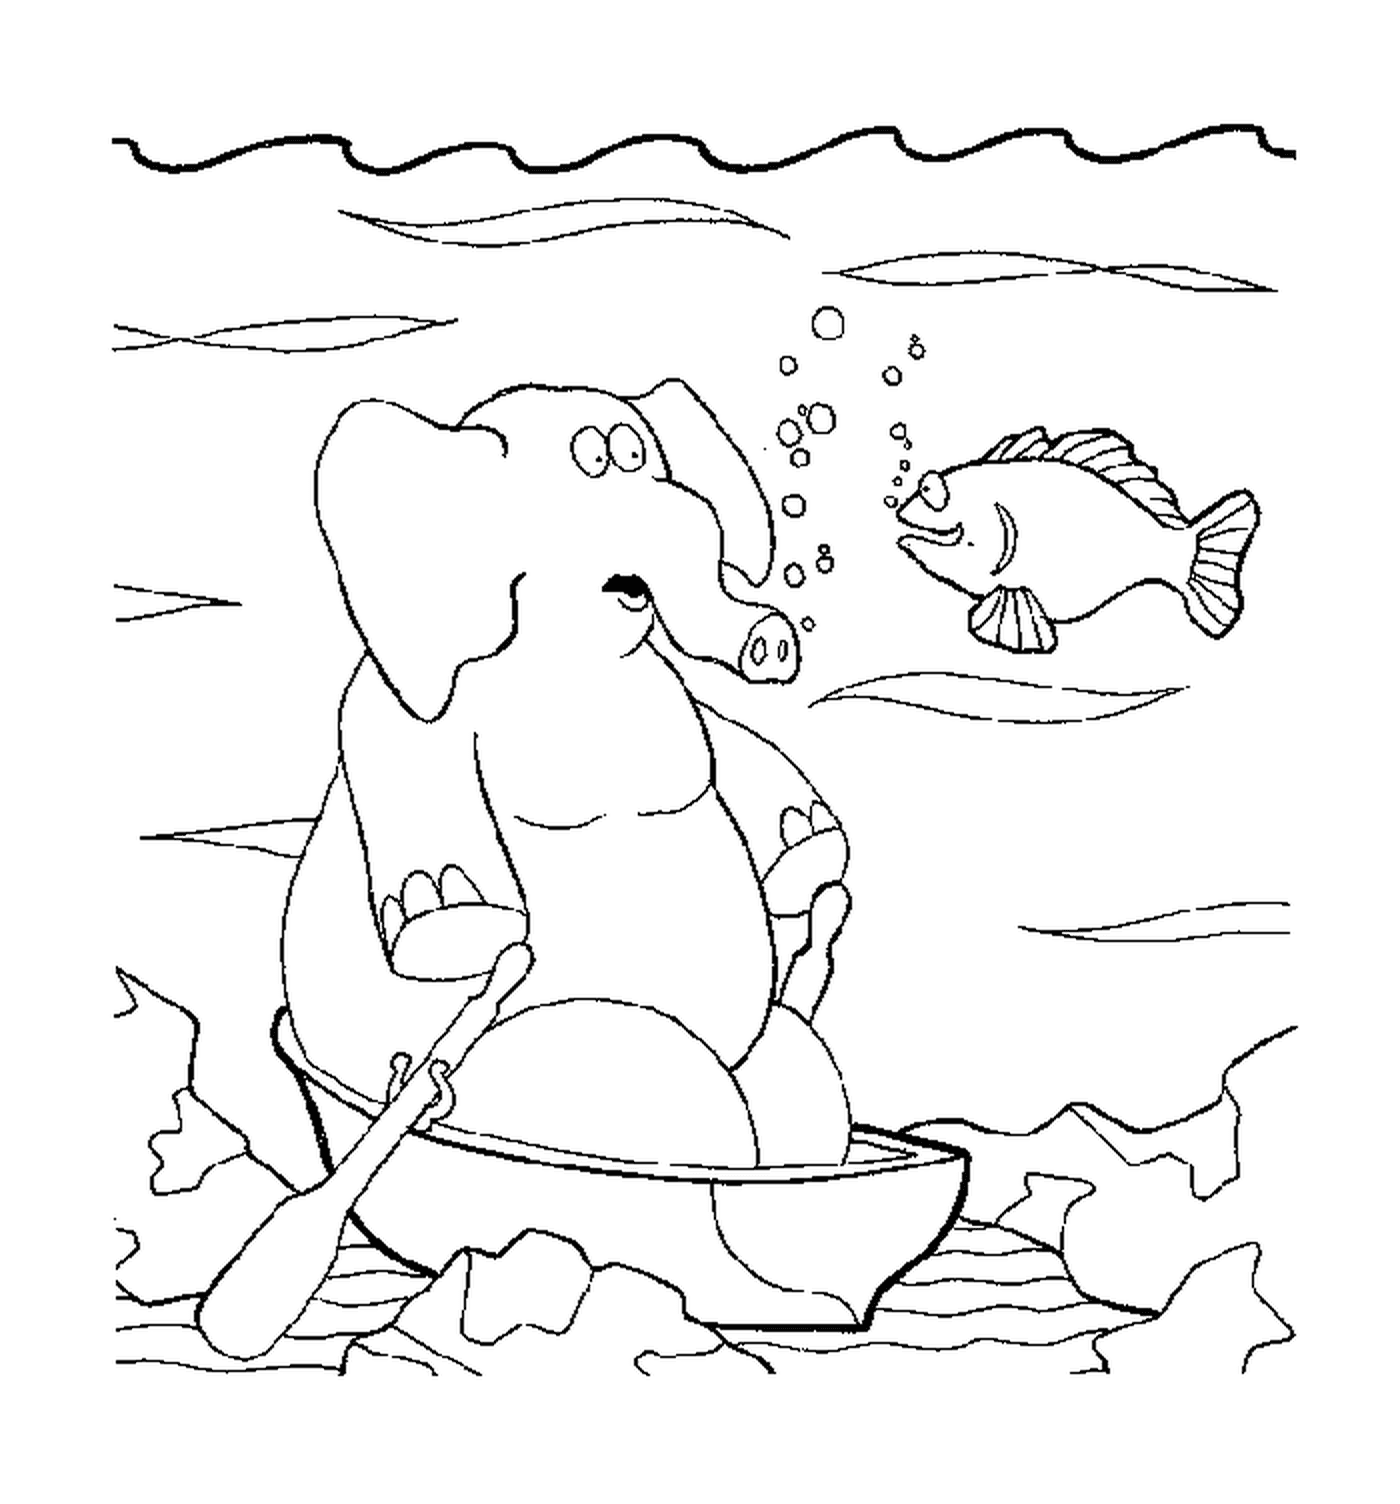  पानी के नीचे हाथी 